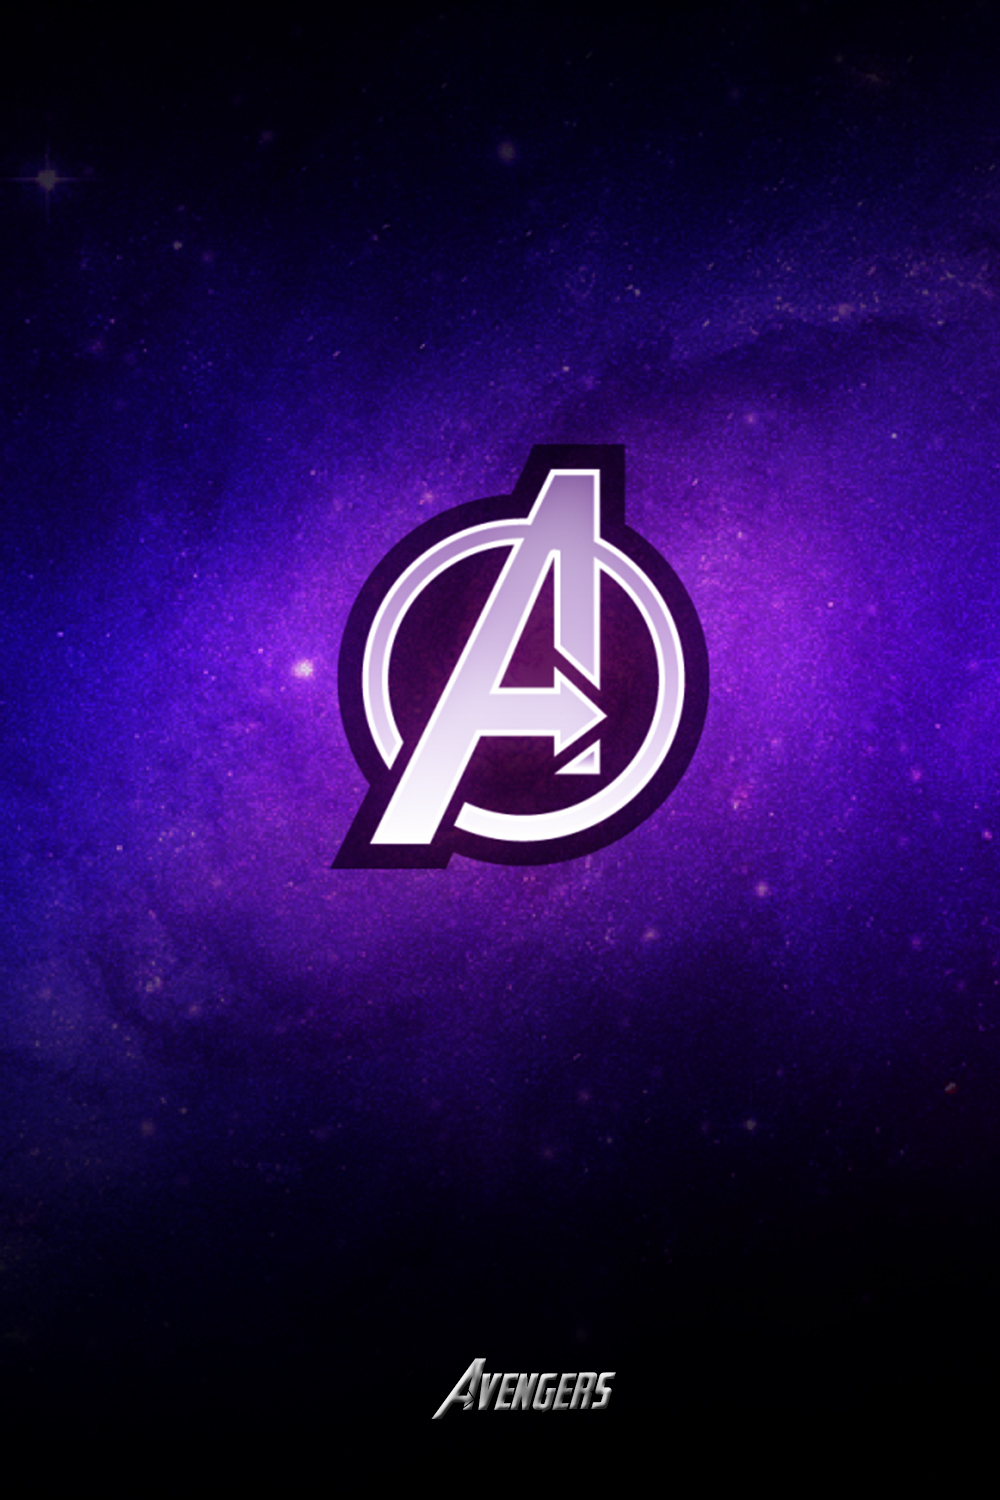 avengers logo Wallpaper iphone. Avengers wallpaper, iPhone wallpaper image, Logo wallpaper hd